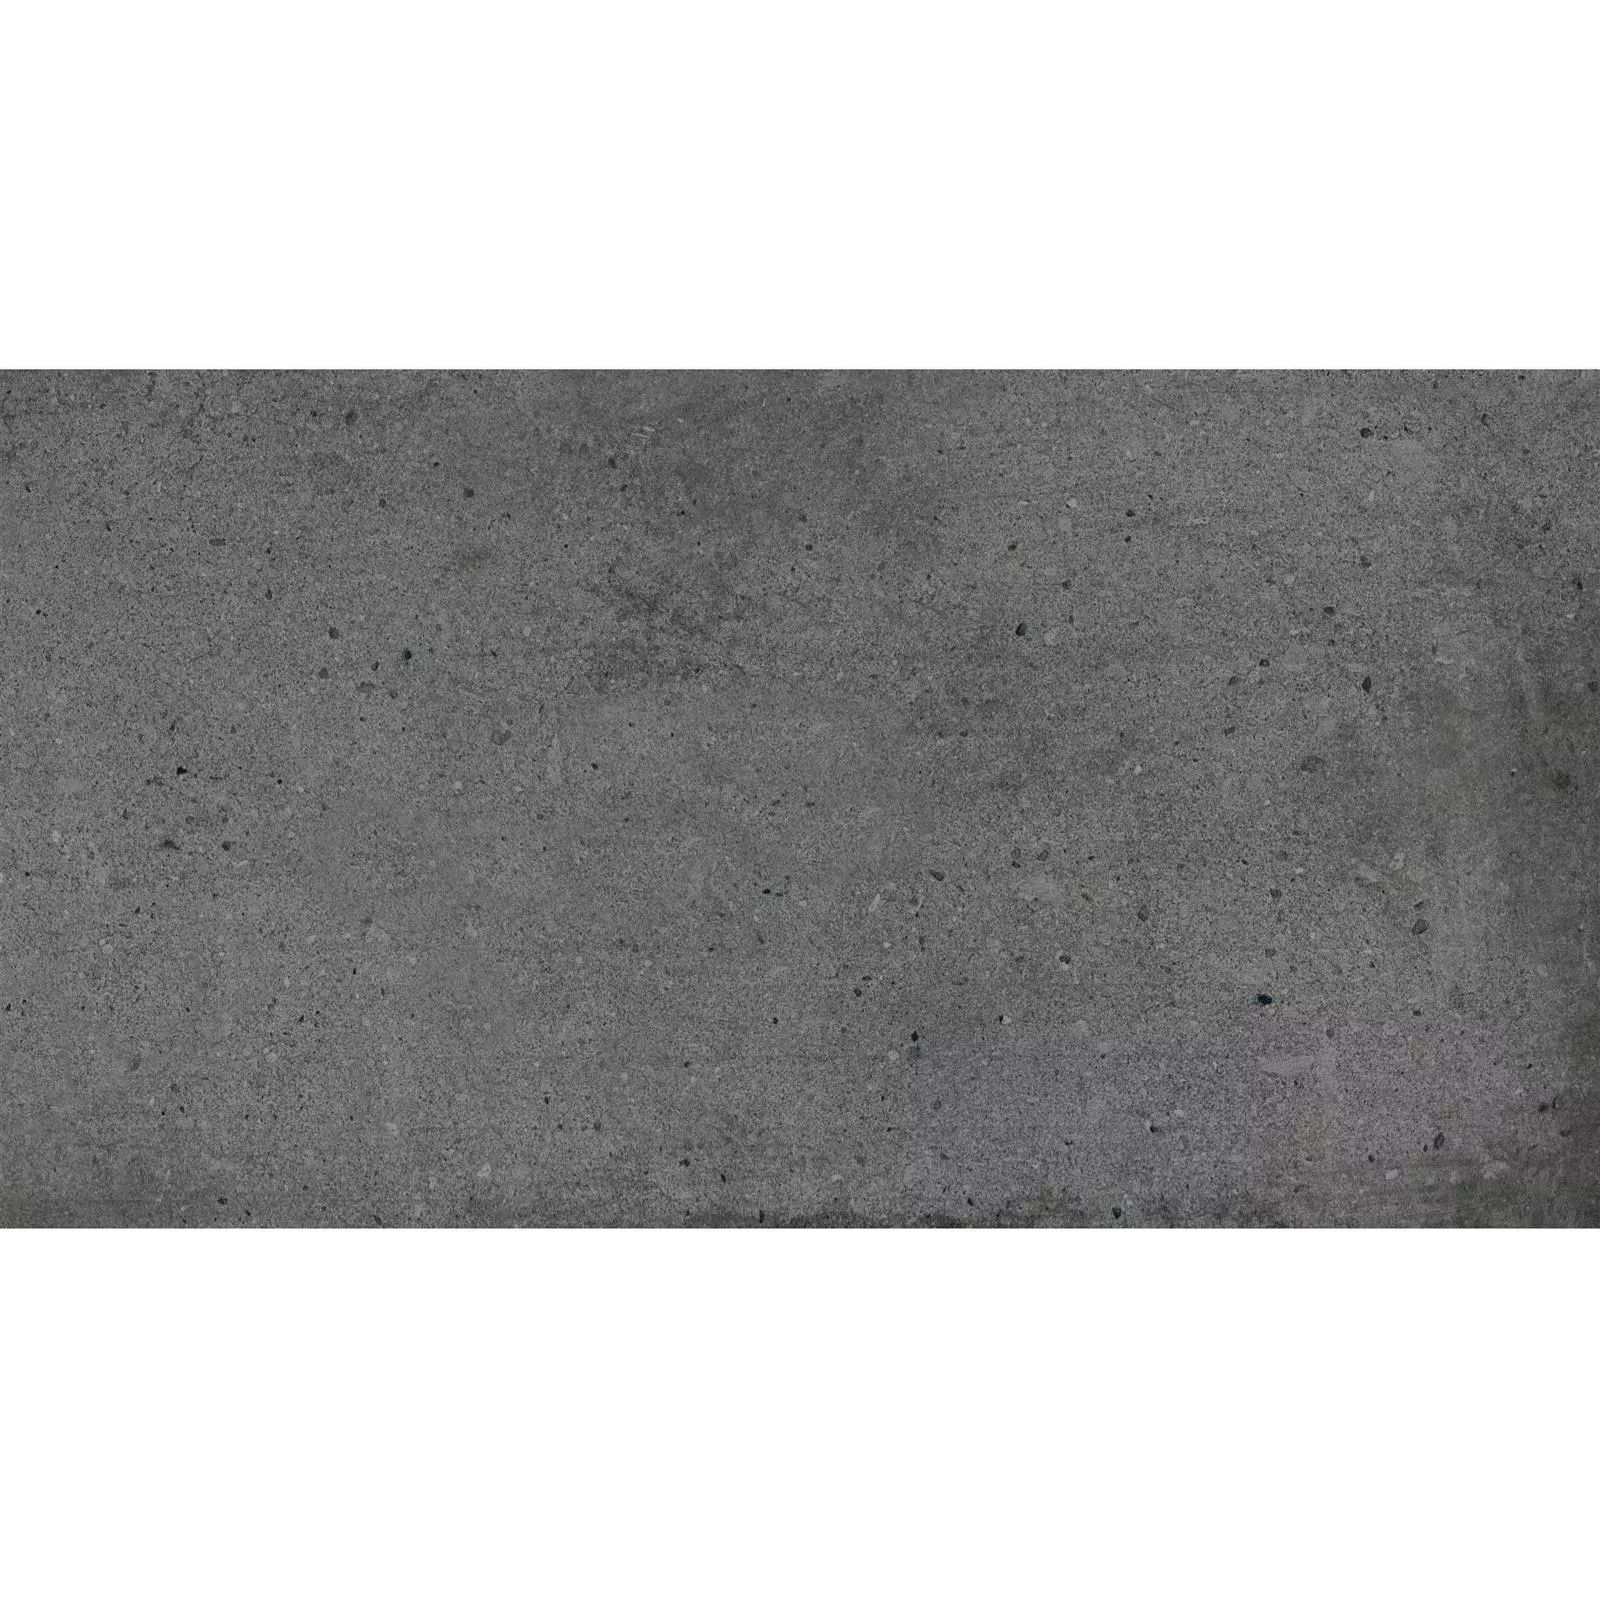 Πλακάκια Δαπέδου Freeland Πέτρινη Όψη R10/B Ανθρακίτης 30x60cm